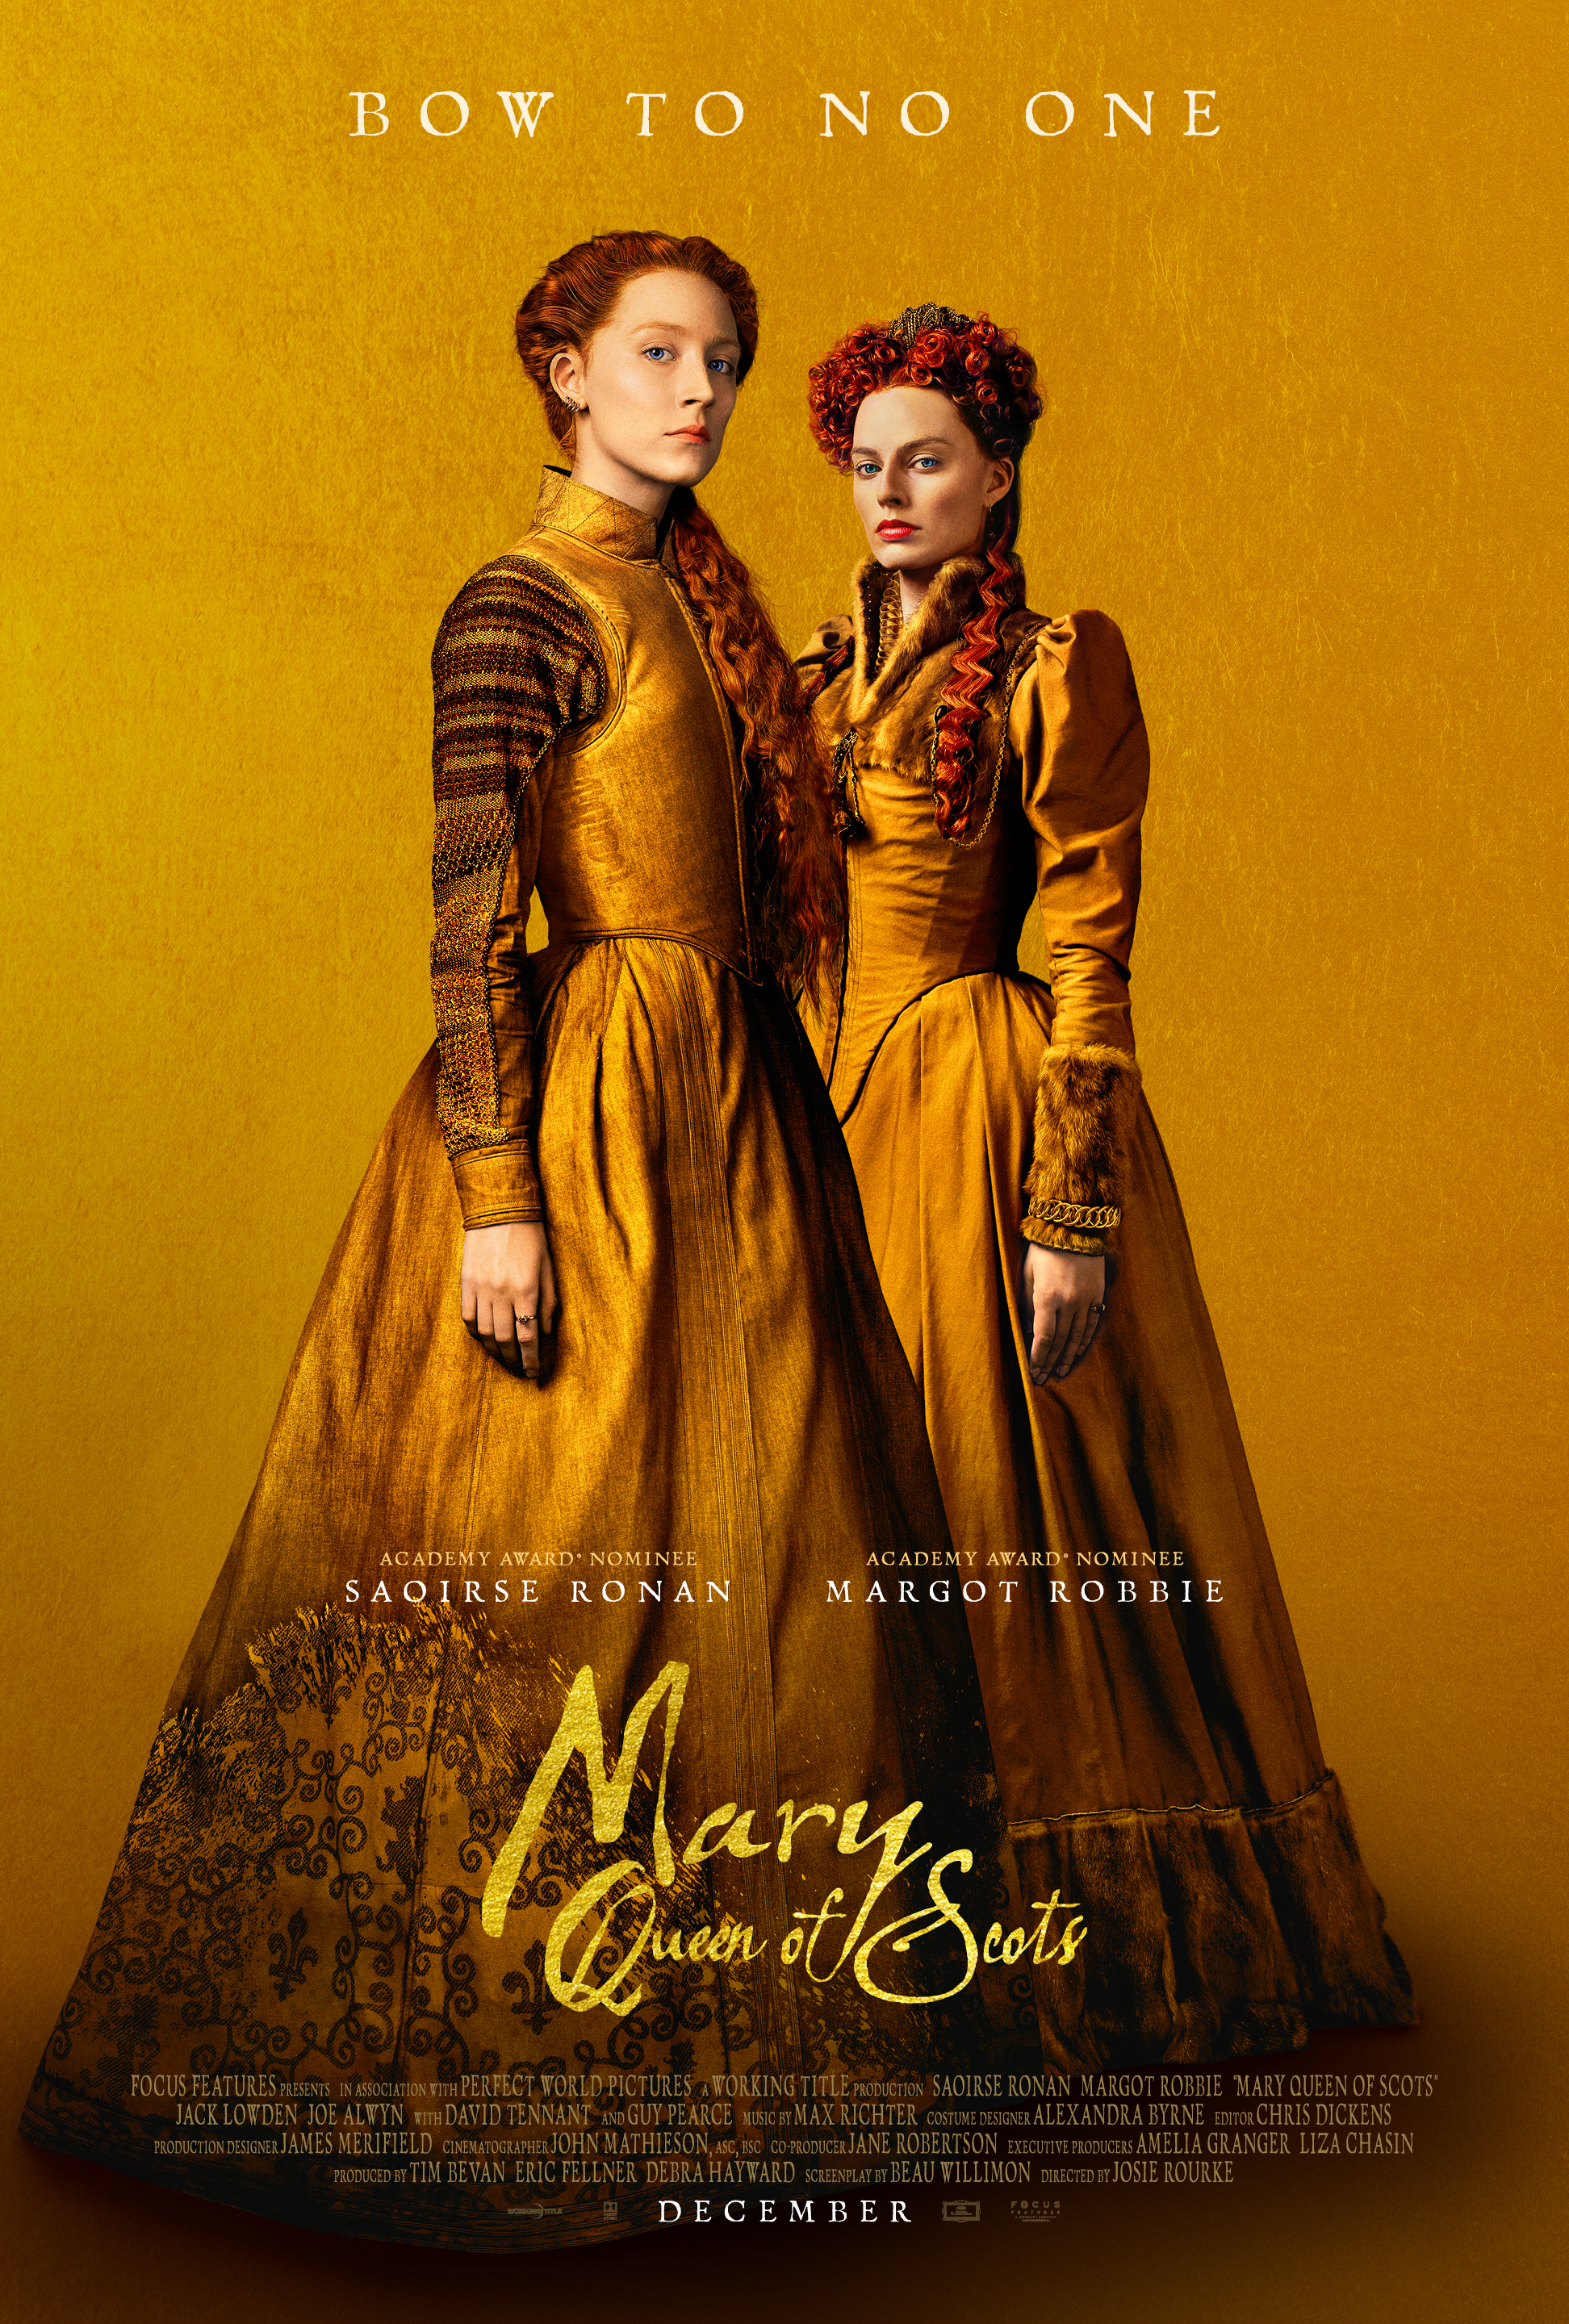 Nonton film Mary Queen of Scots layarkaca21 indoxx1 ganool online streaming terbaru